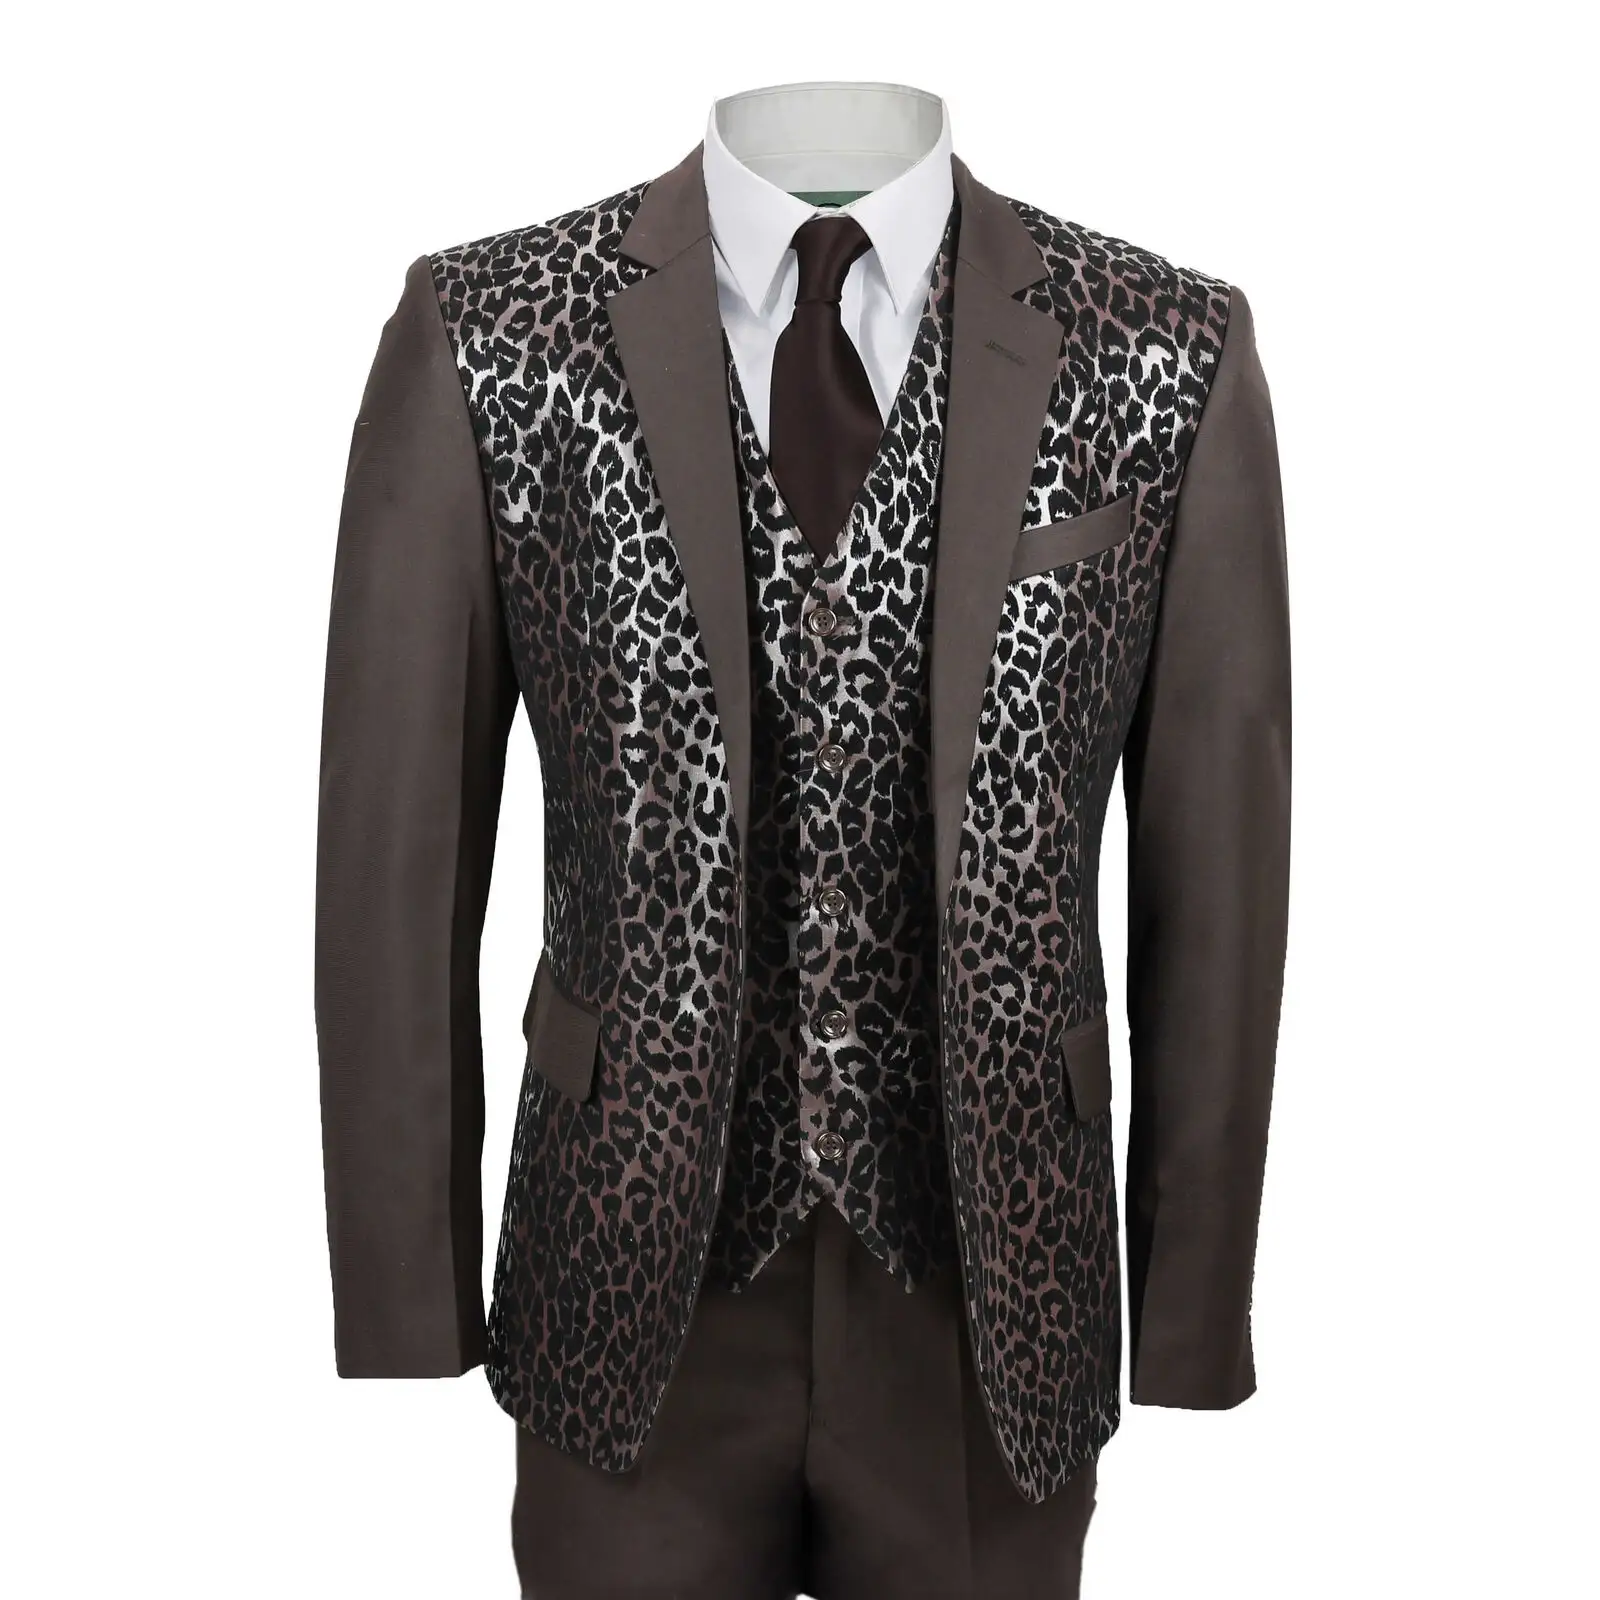 Mens Brown 3 Piece Suit Black Leopard Rosette Print Slim Fit Blazer Dress Party